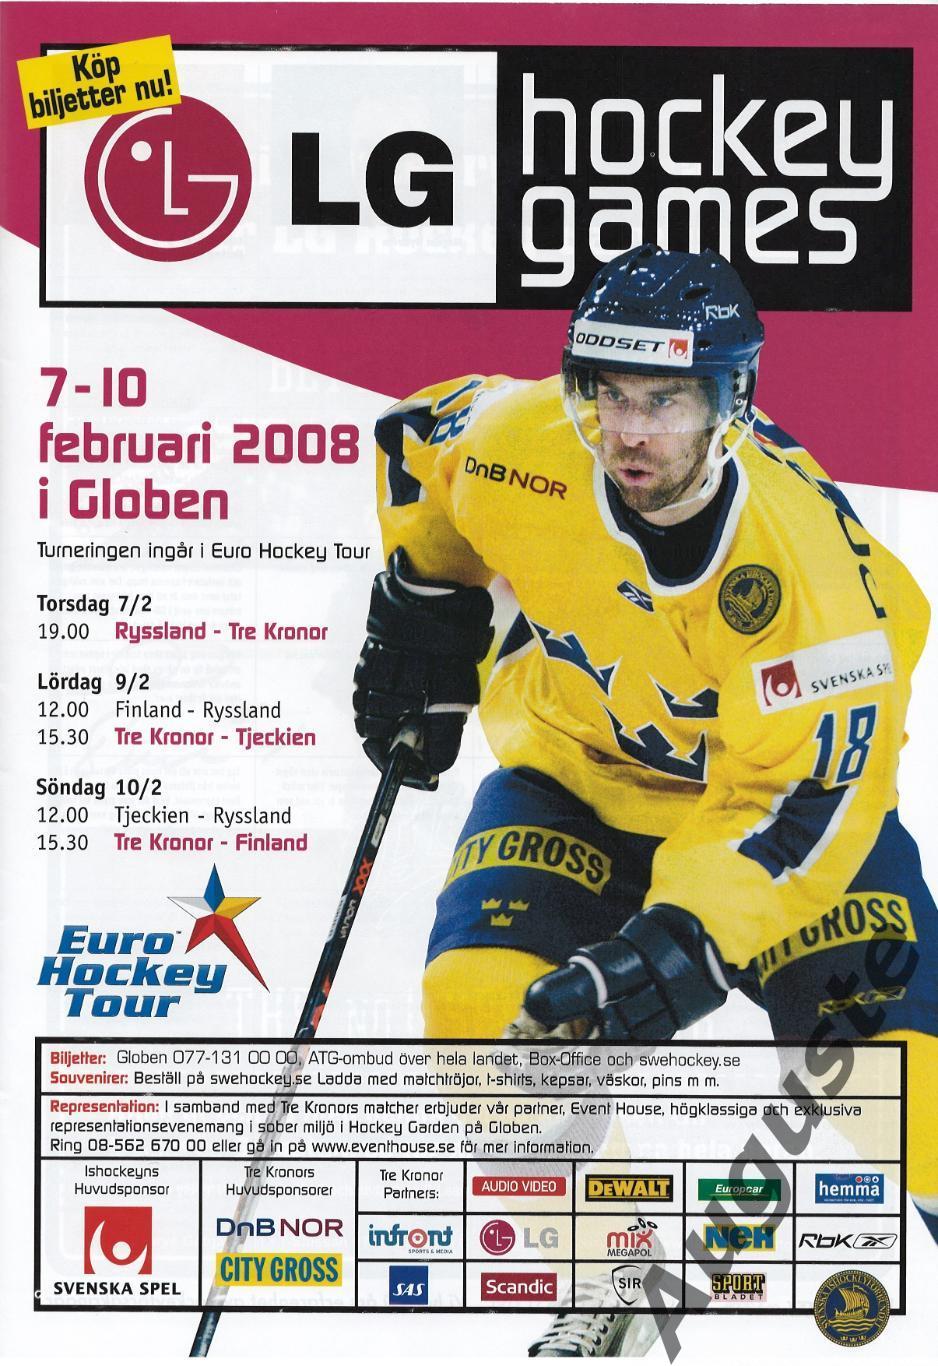 Журнал ХОККЕЙ № 1 - 2008. Швеция. Материалы к Шведским хоккейным играм. 3